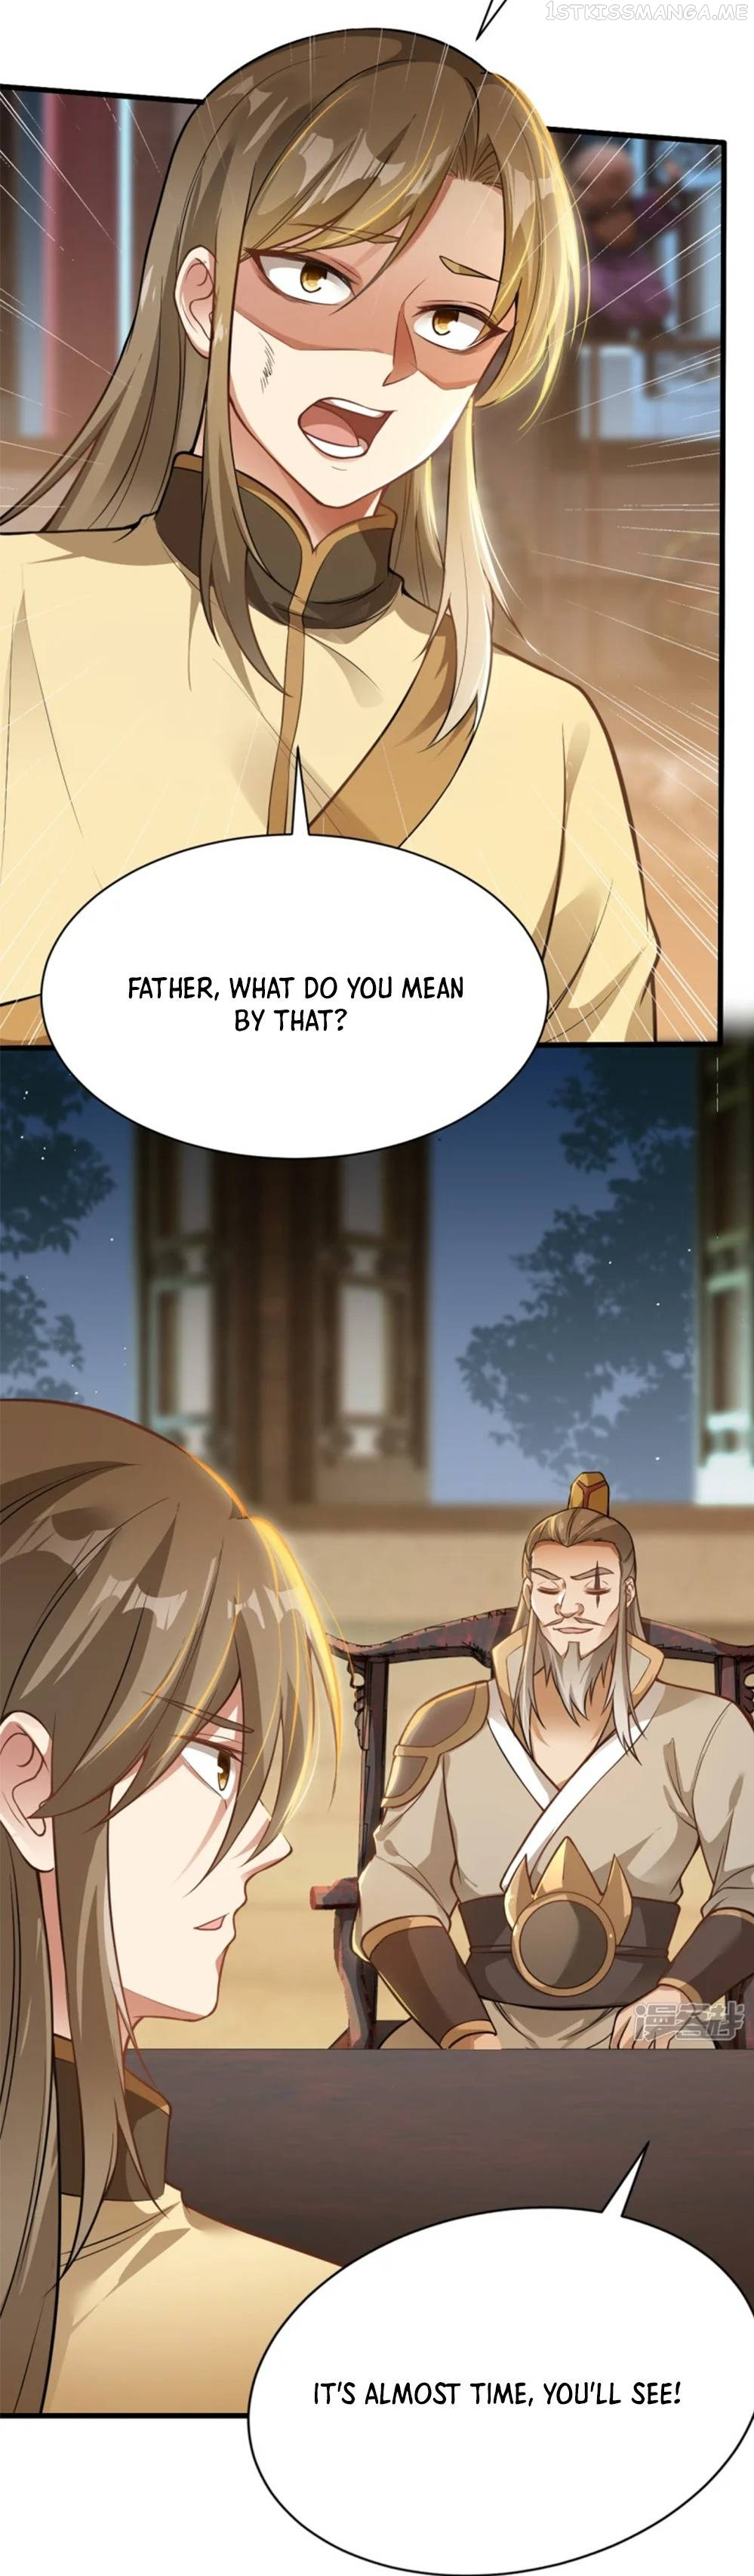 Sword Emperor As Son-In-Law - Page 2